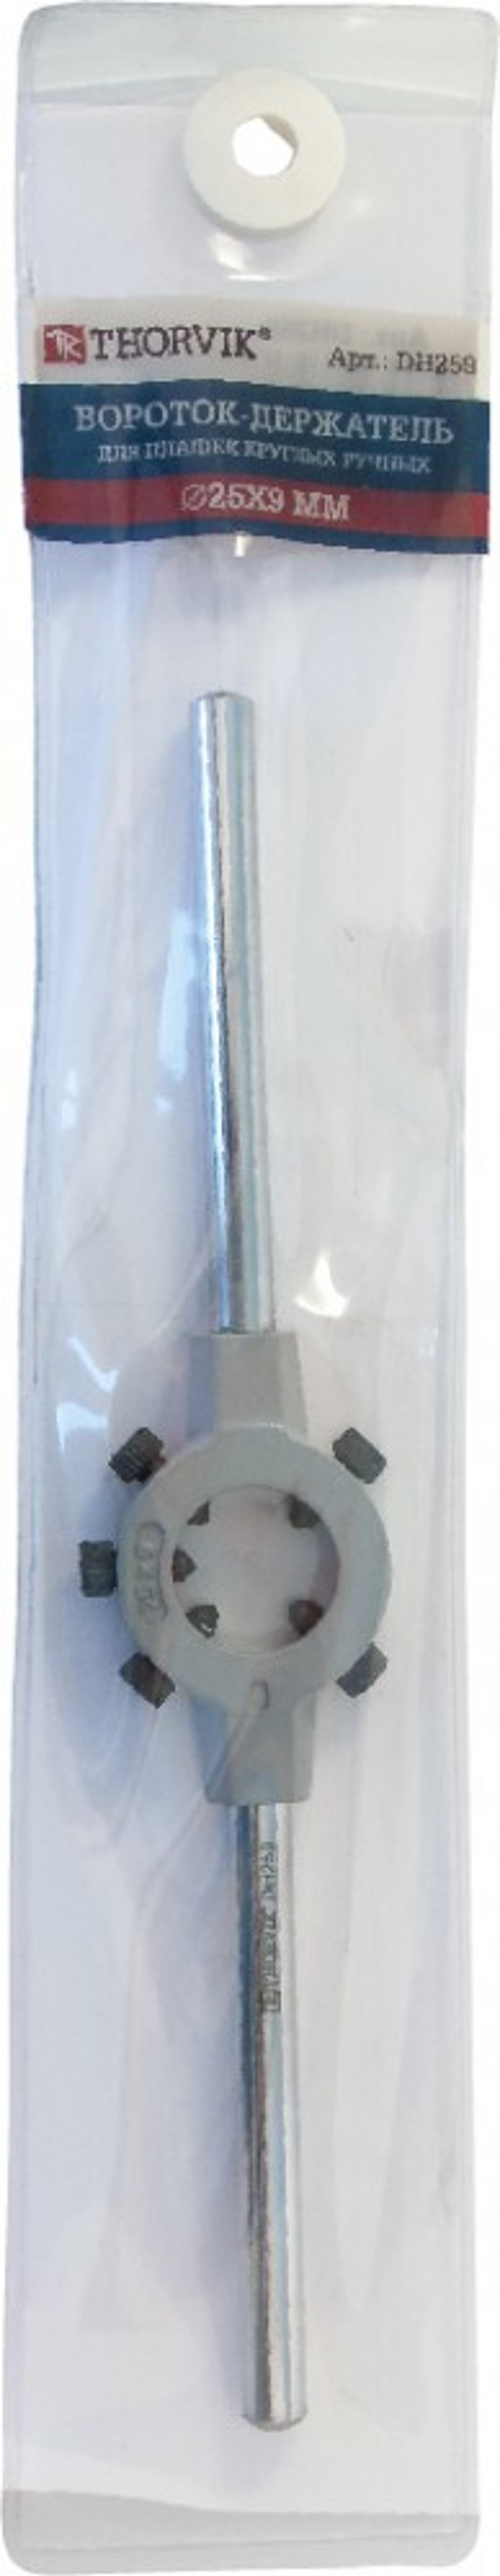 DH3814 Вороток-держатель для плашек круглых ручных Ф38x14 мм